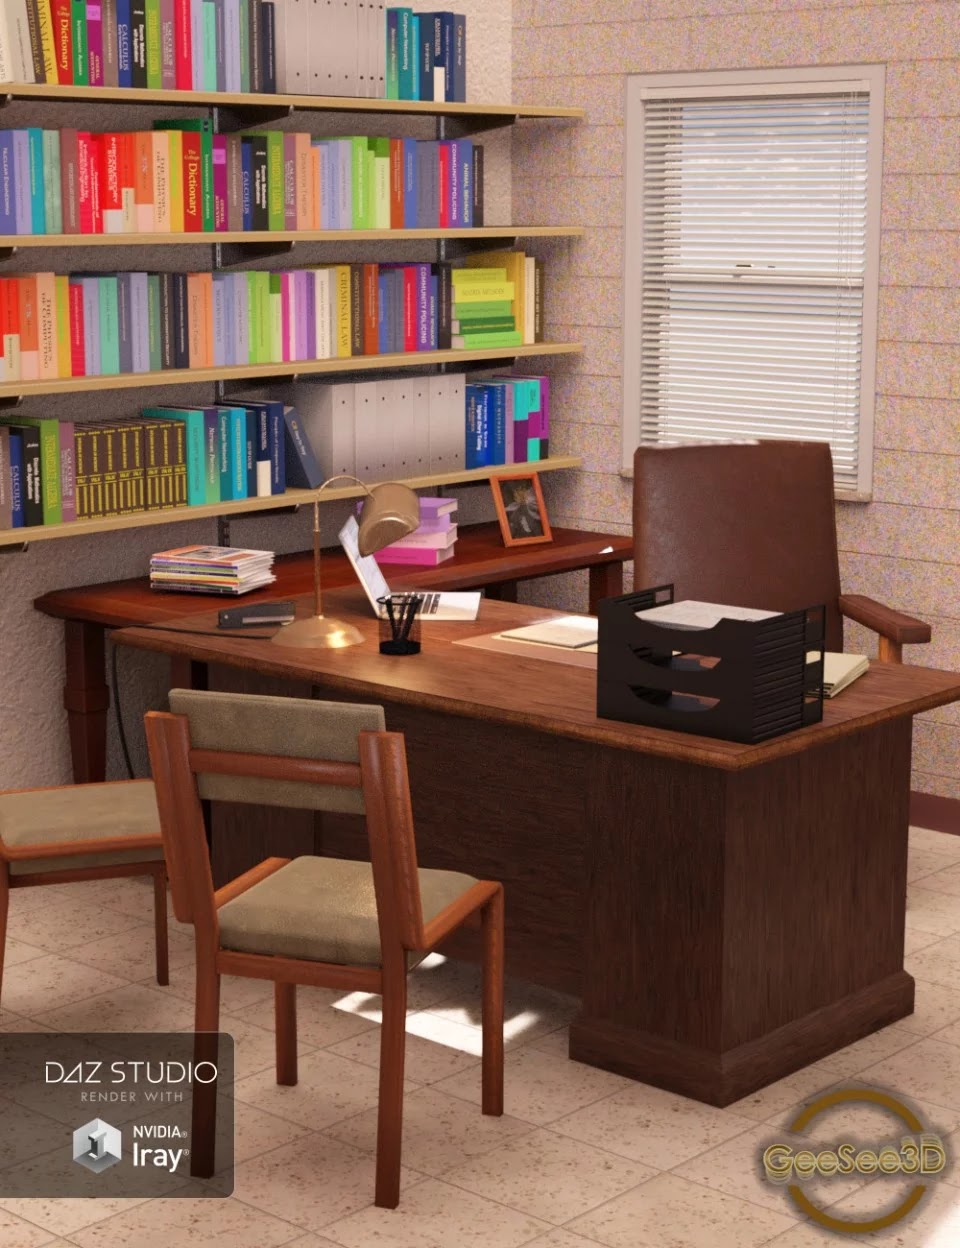 Professor’s Office_DAZ3DDL